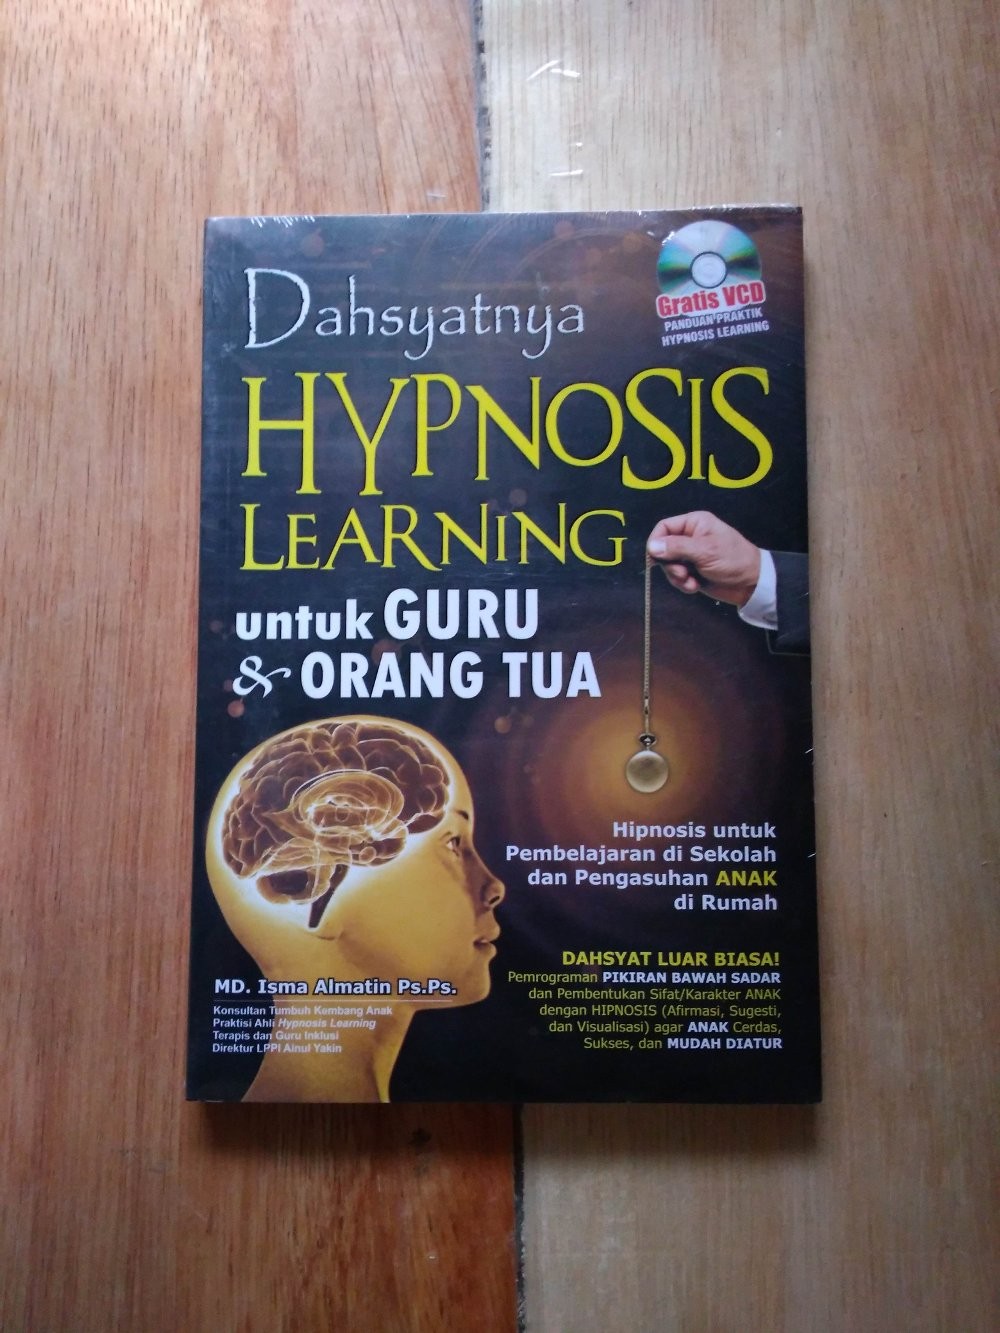 Dahsyatnya hypnosis learning